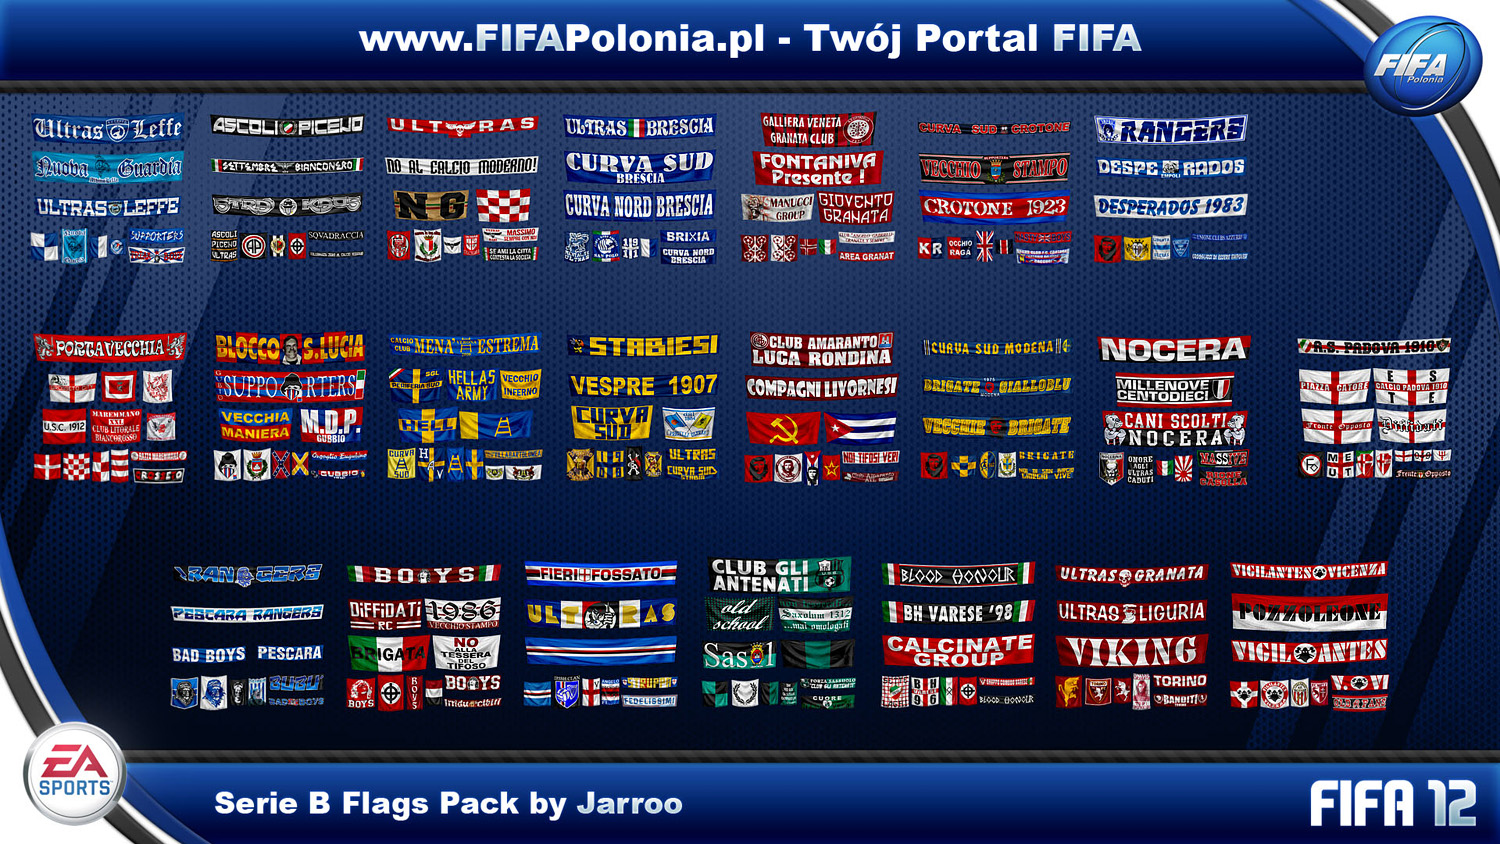 Serie B Flags Pack by Jarroo